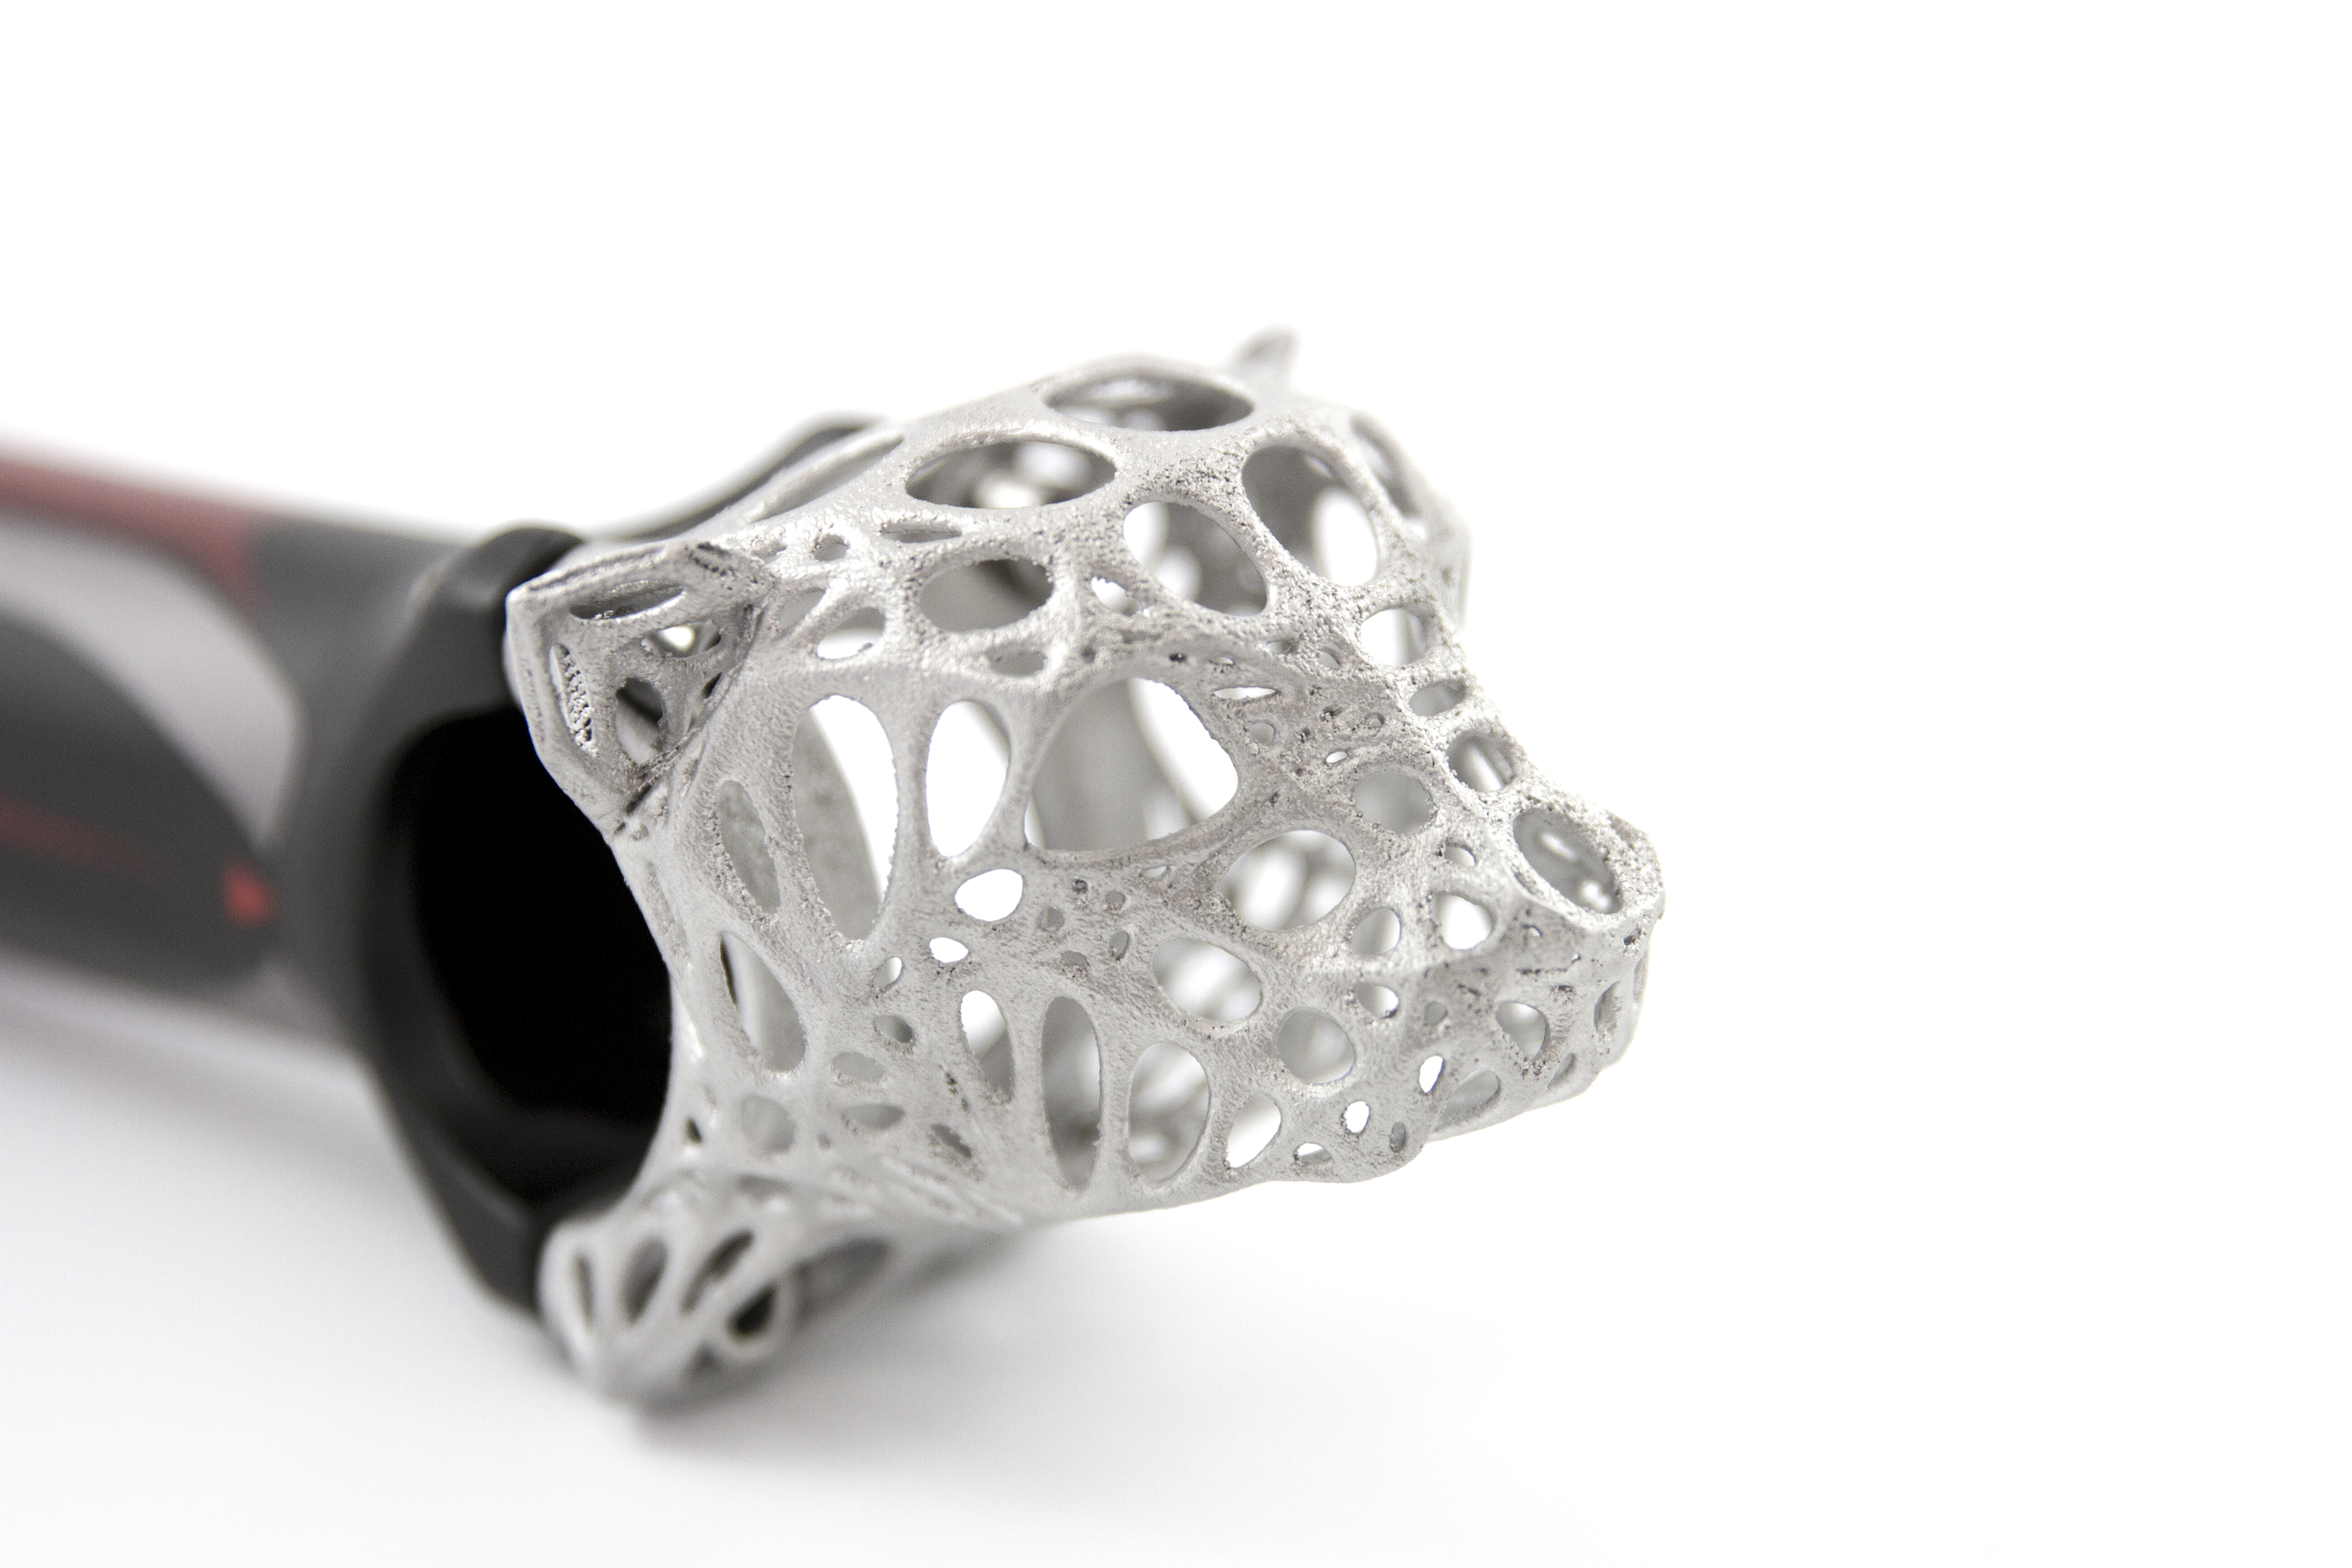 imaterialise aluminum 3d printing cheetah bike stem by nils faber  002